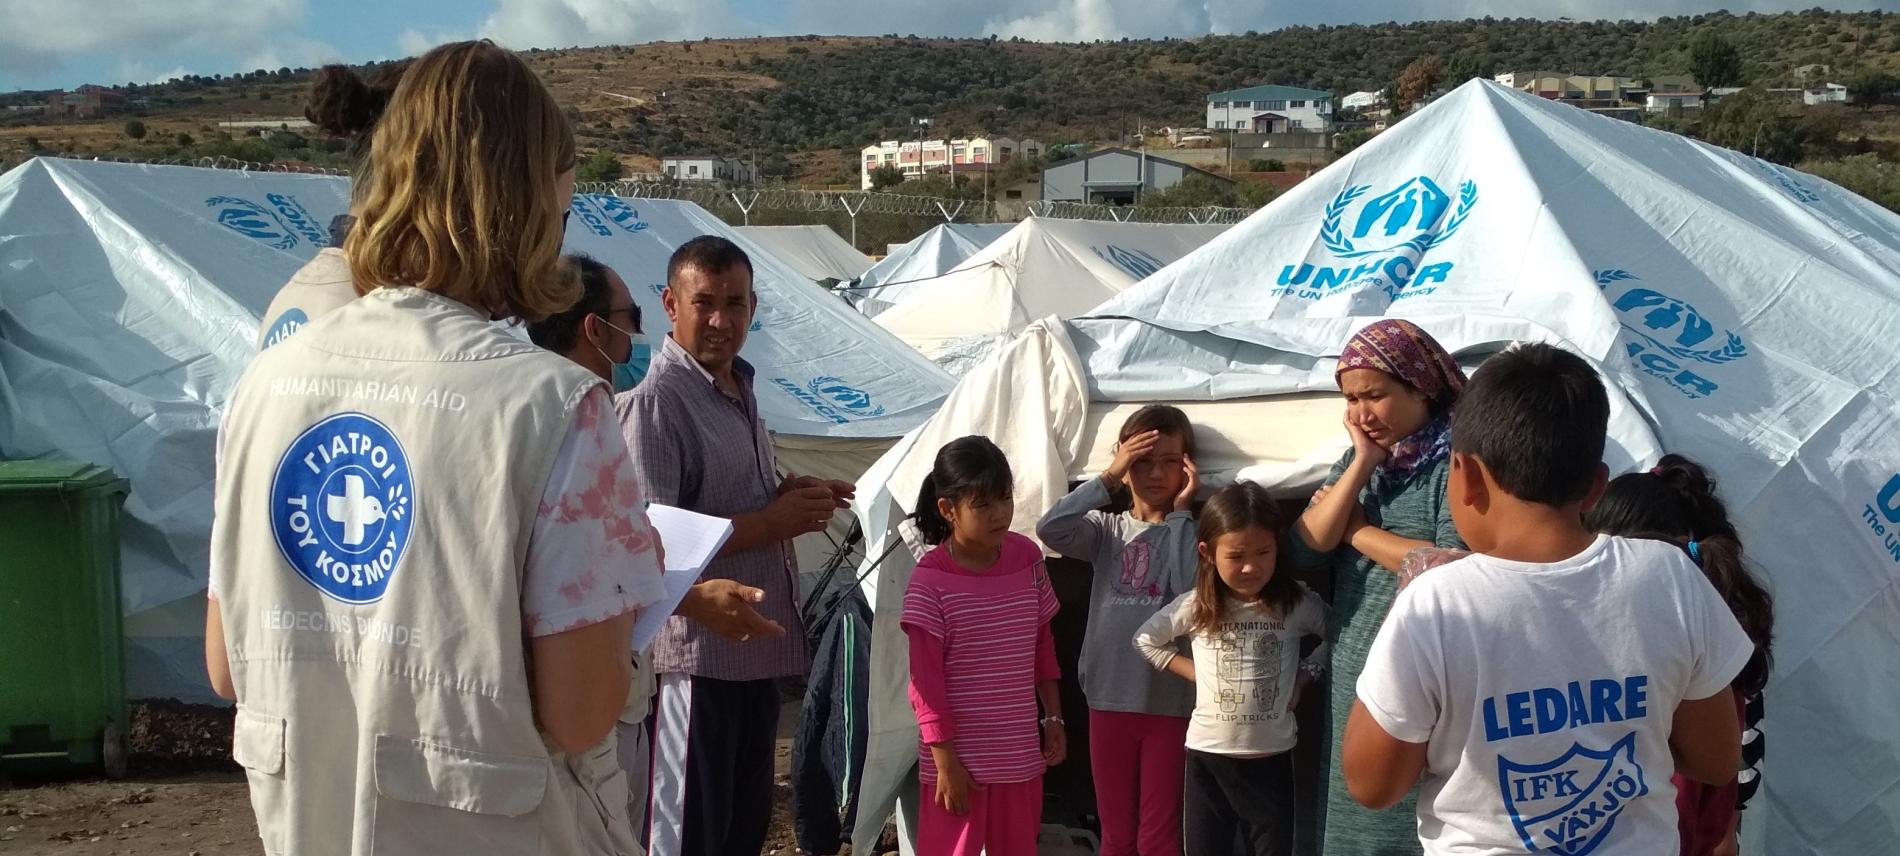 Ärzte der Welt-Mitarbeiter*innen mit Flüchtlingen auf der Insel Lesbos. Foto: Yiannis Yiannakopolous